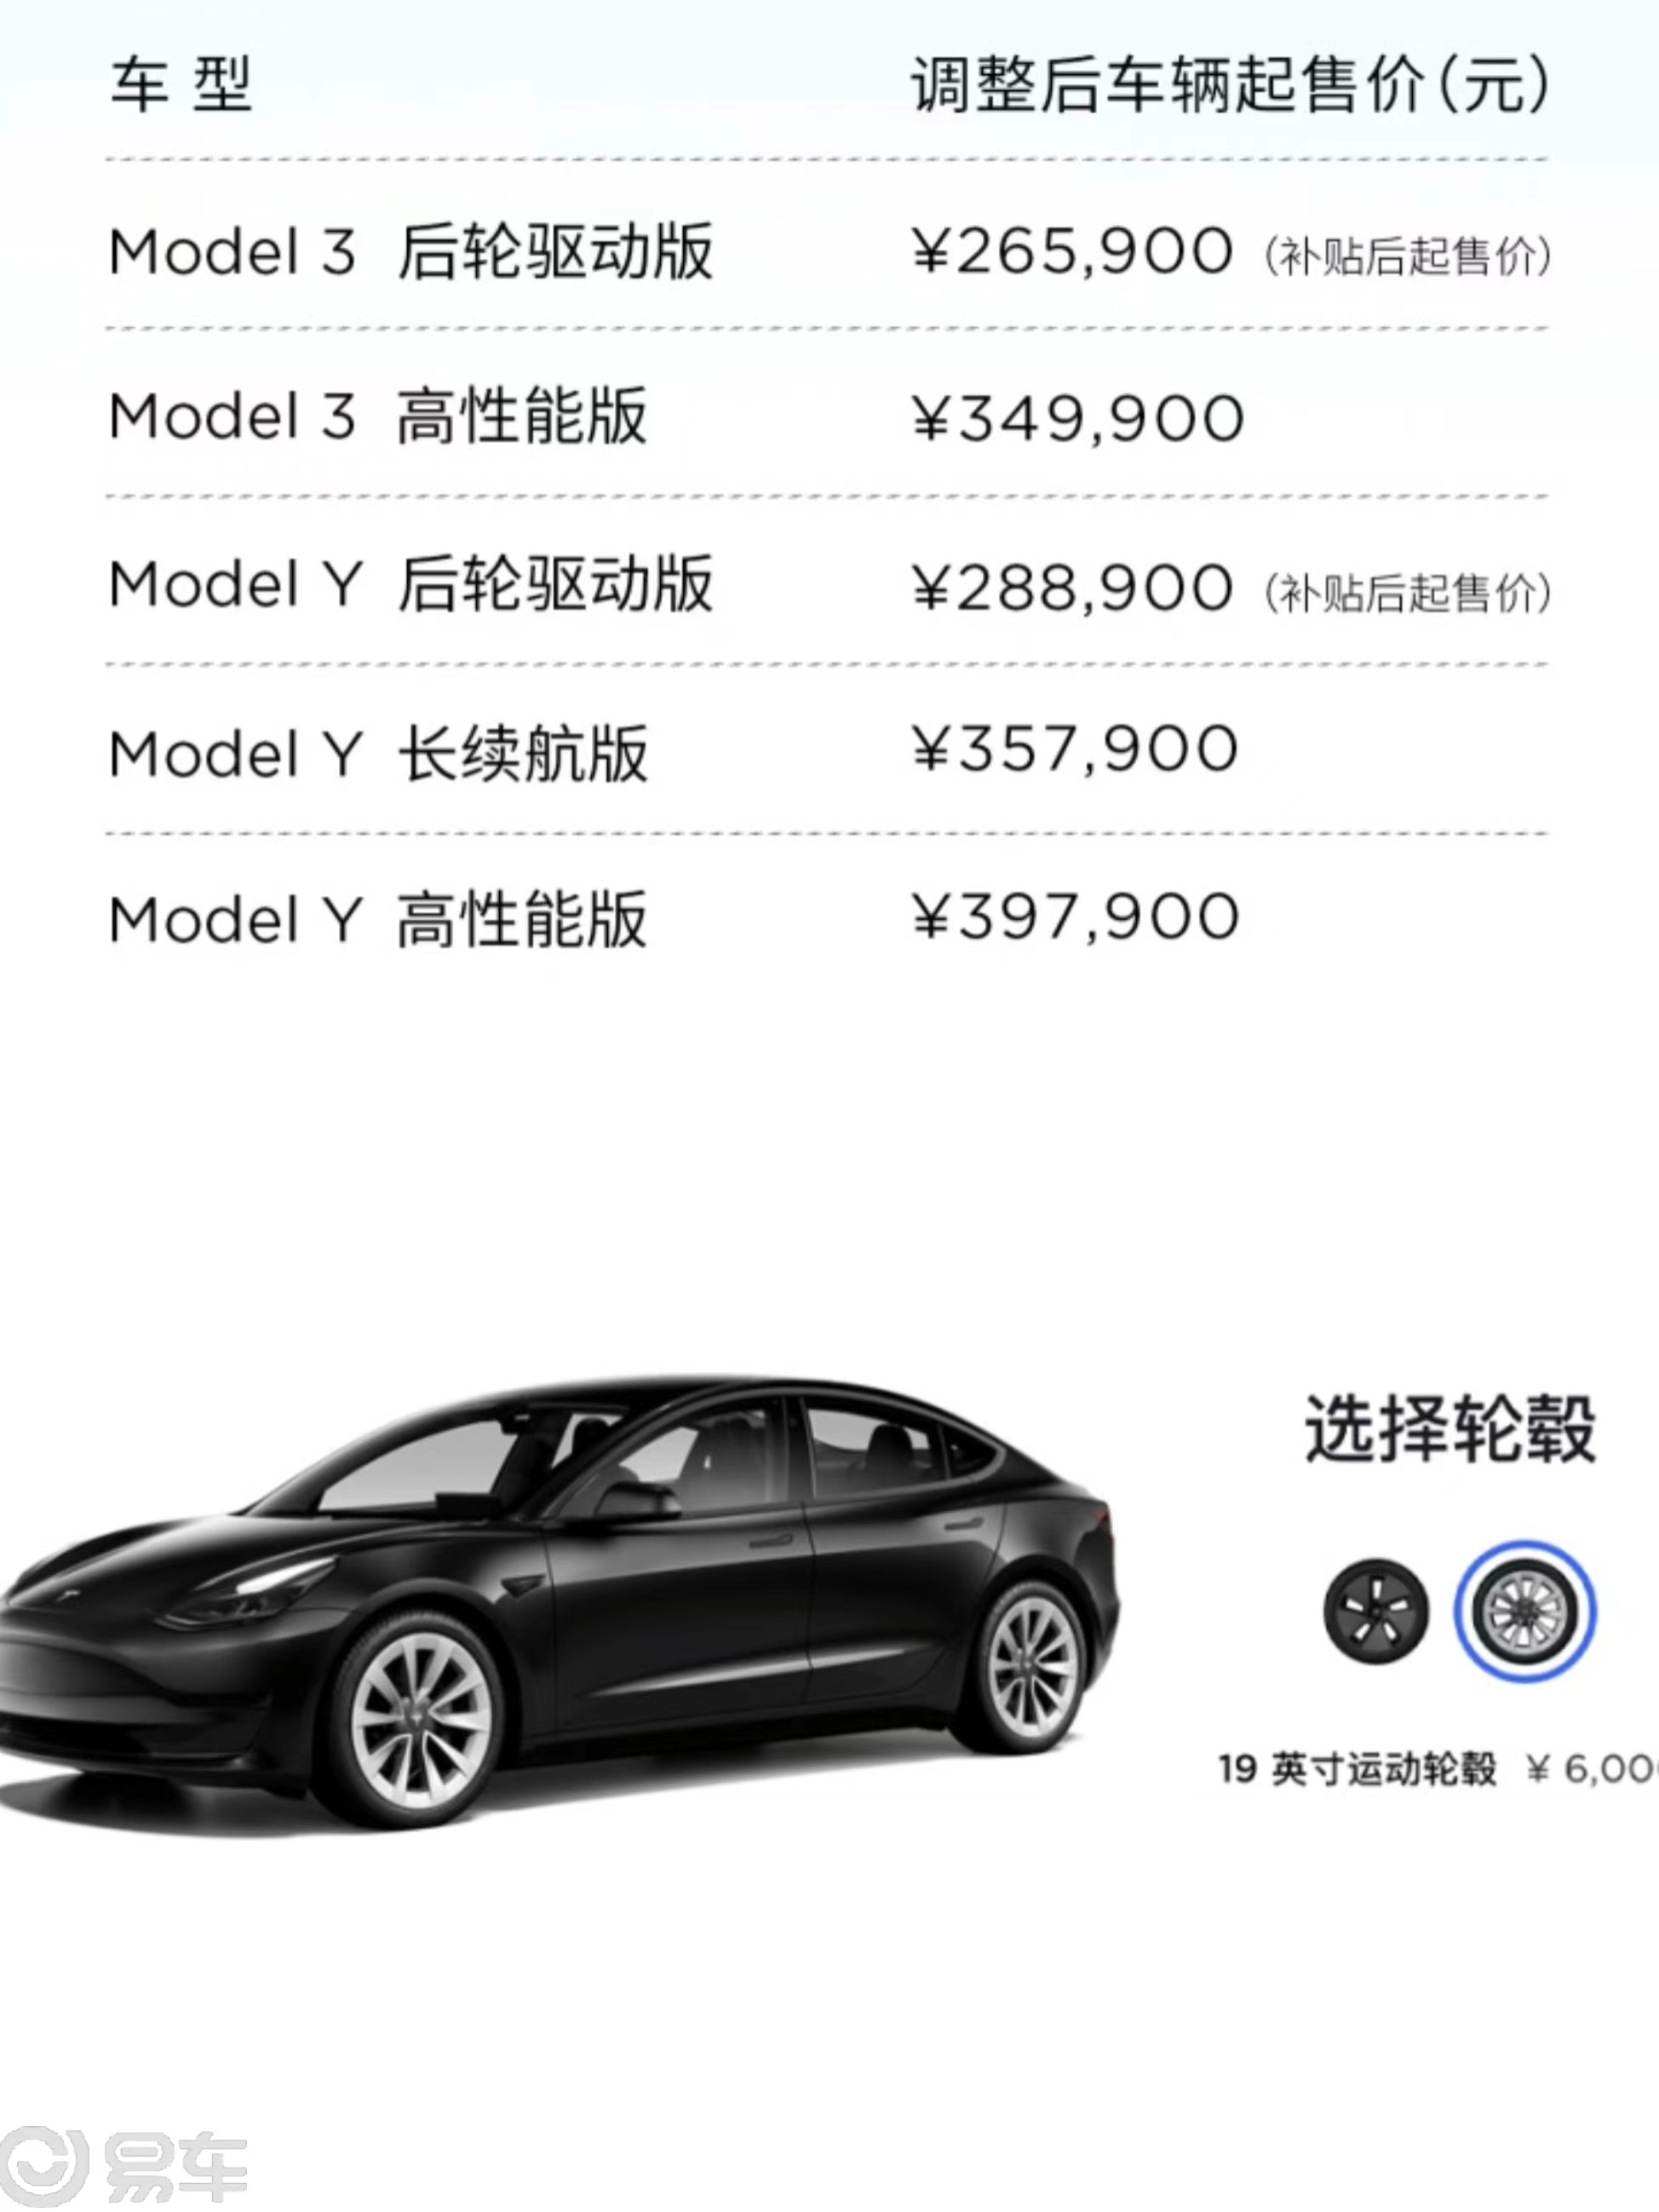 特斯拉 Model 3 最新车型消息 或将推出 4 款车型_新闻_新出行